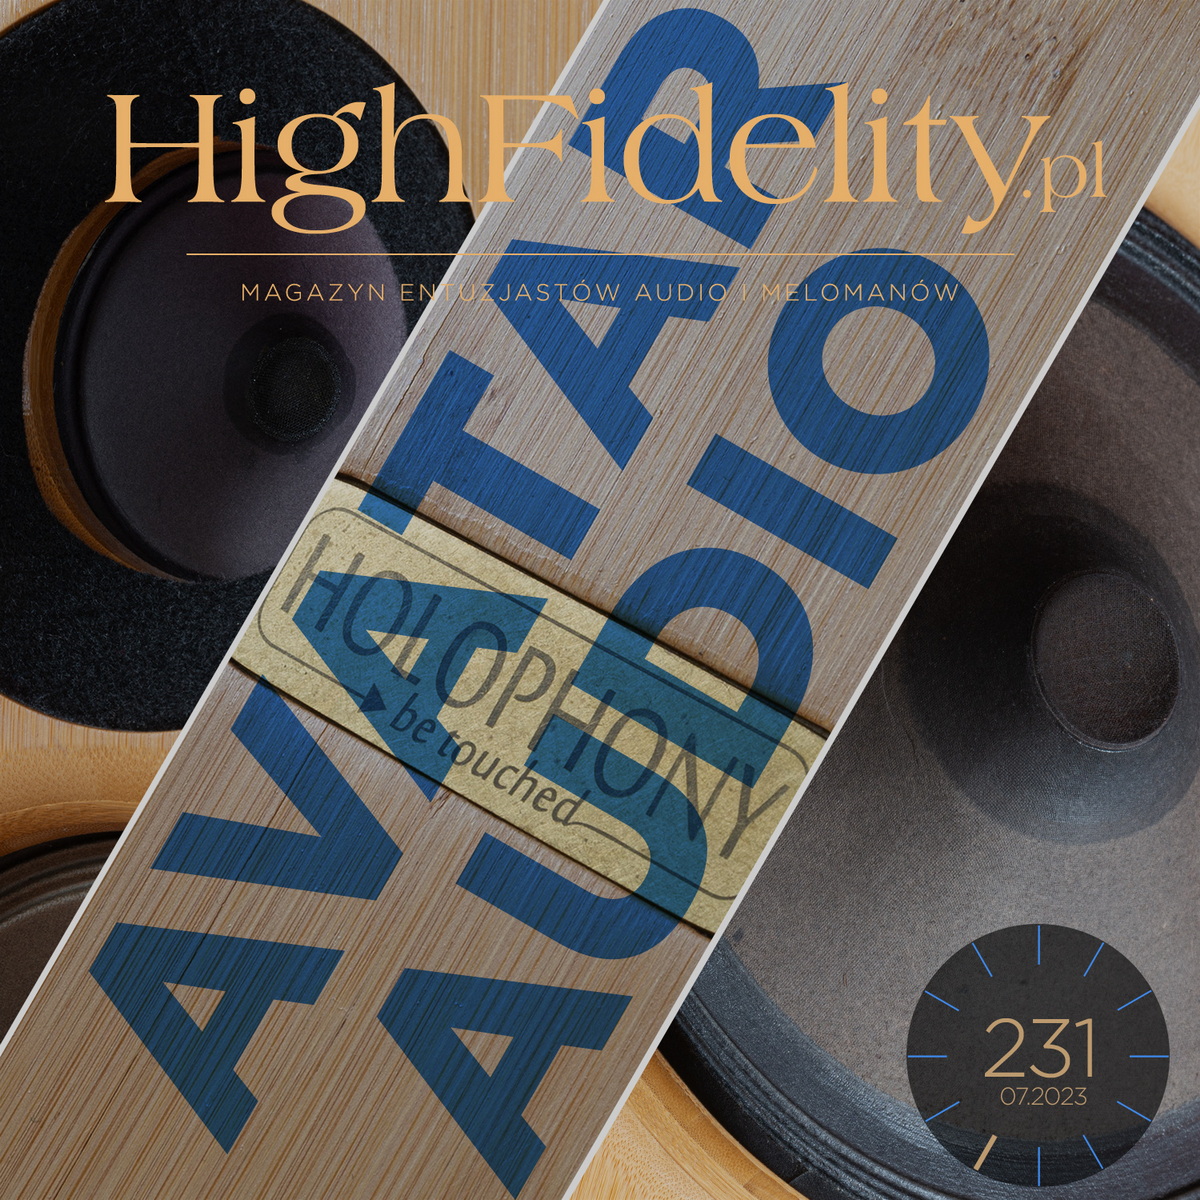 „High Fidelity” № 231 ⸜ LIPIEC 2023. Zapowiedź